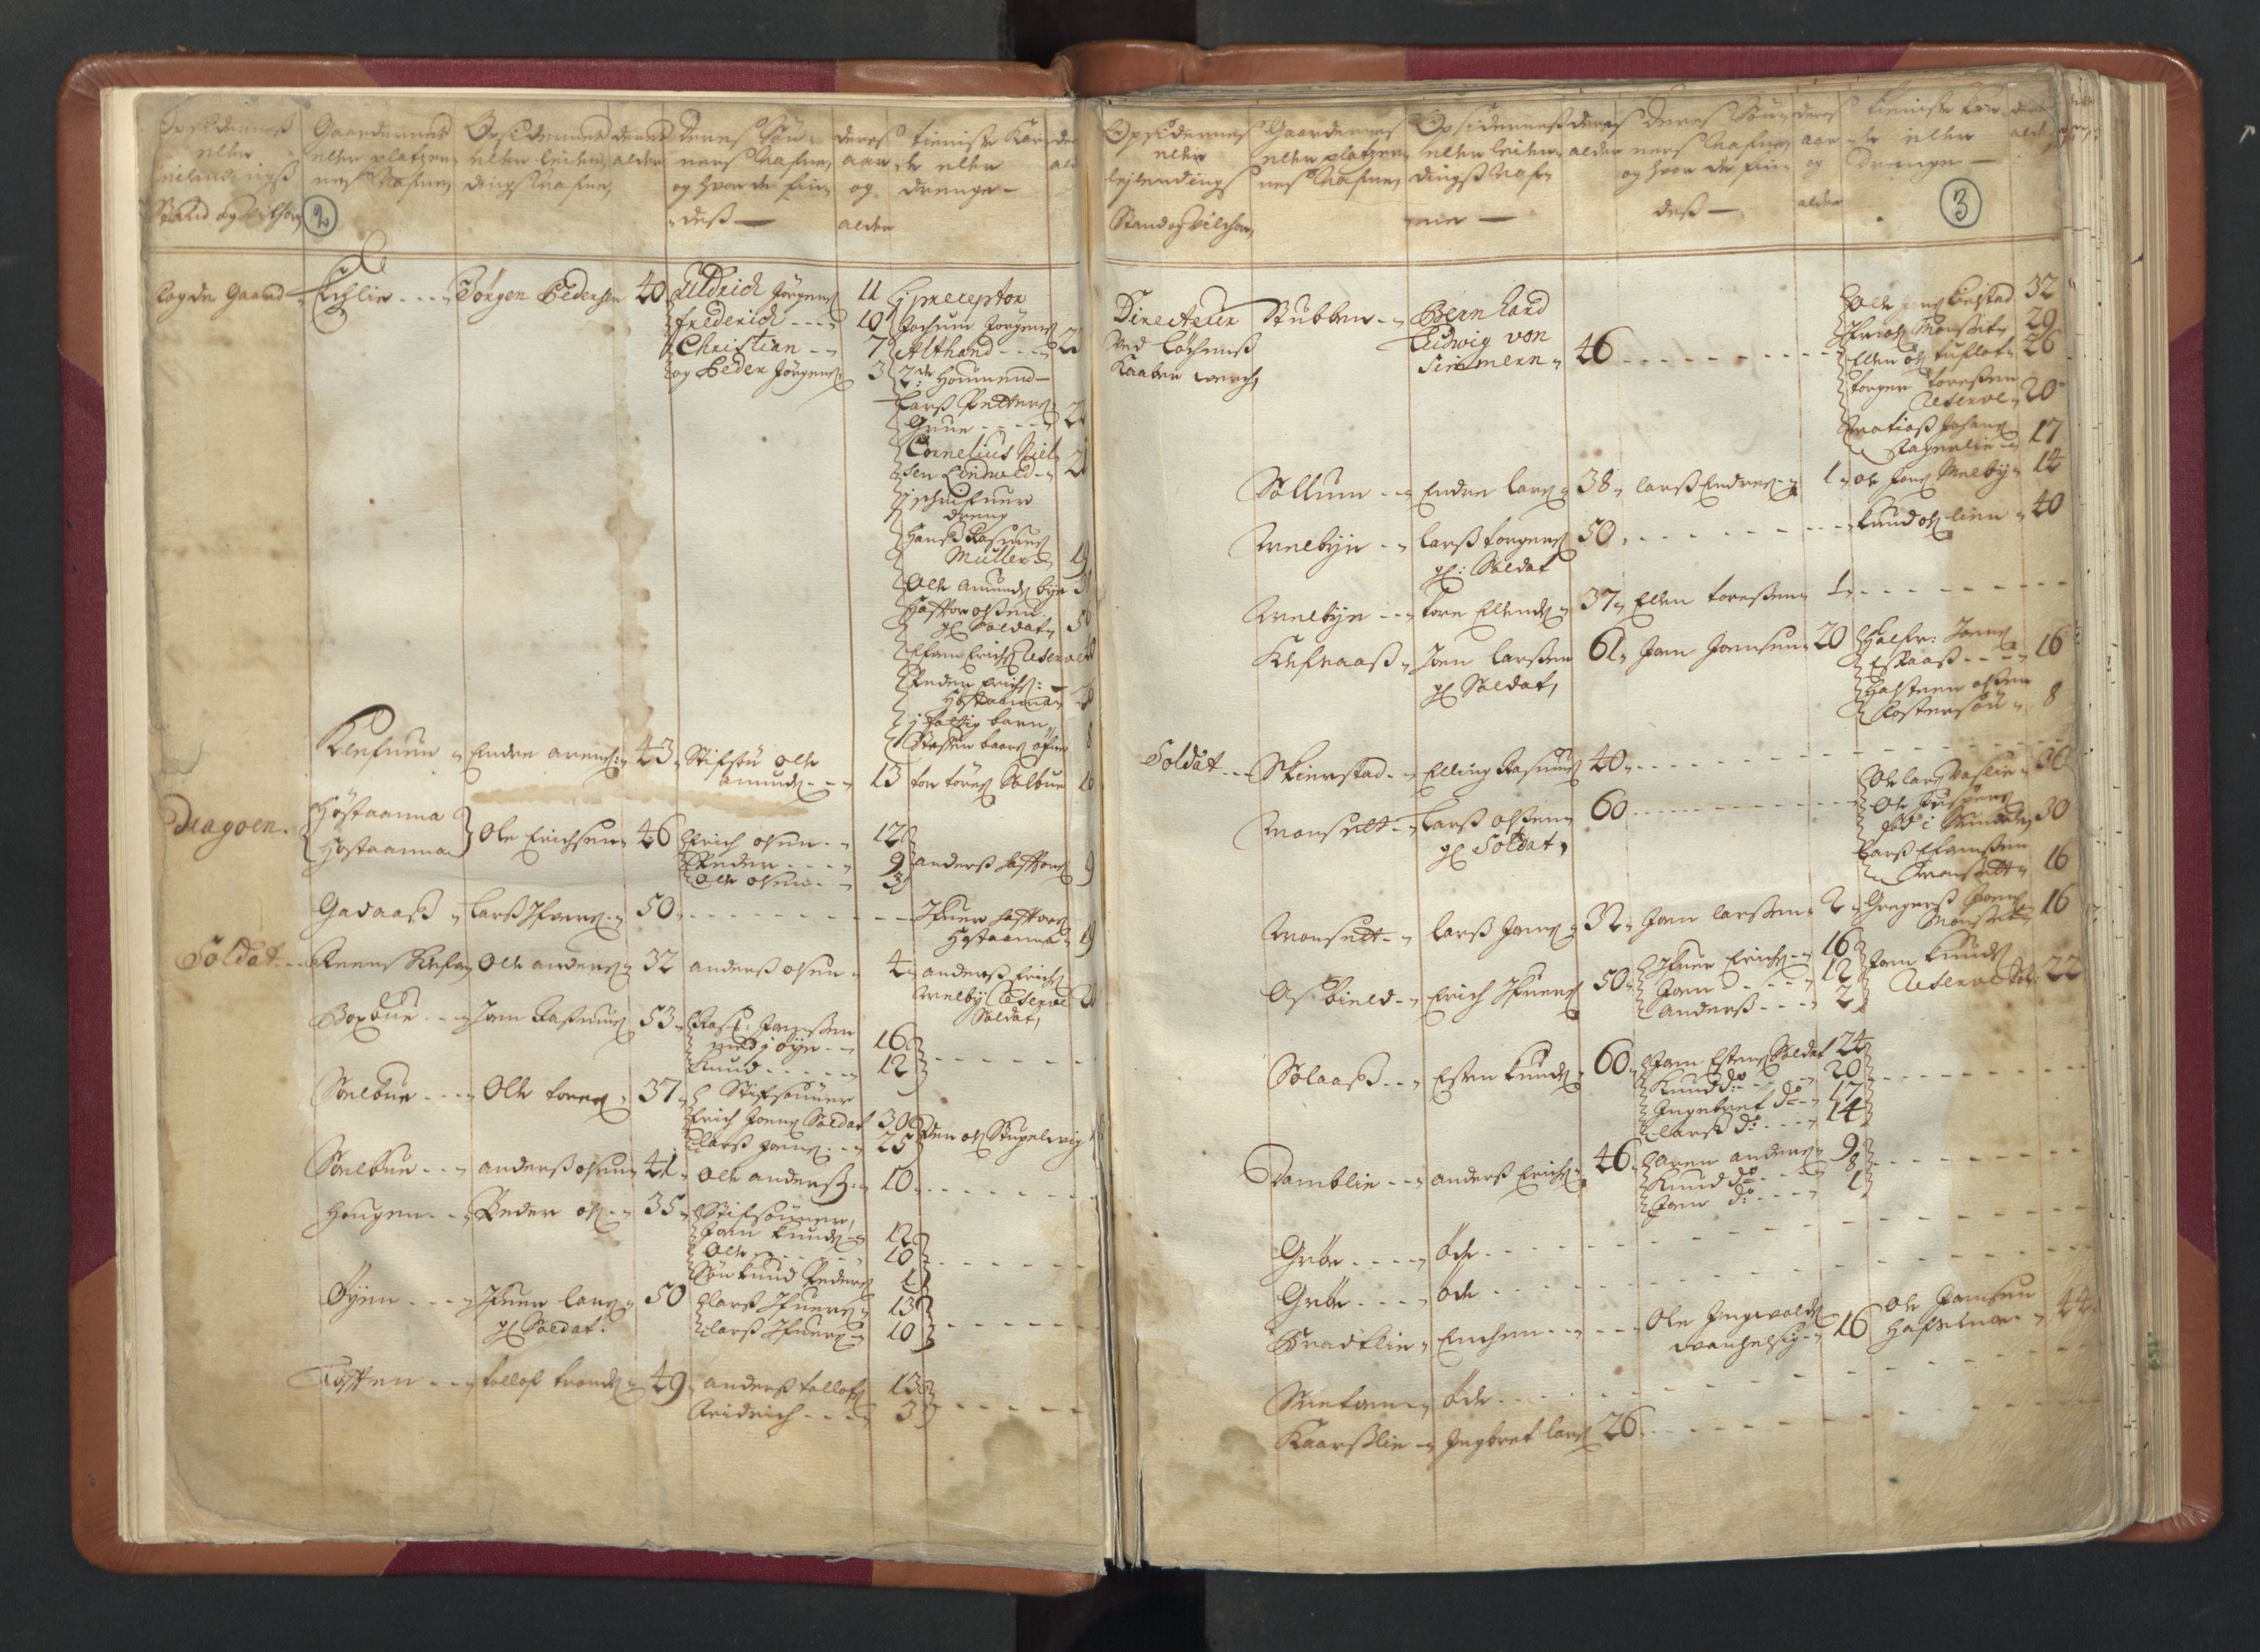 RA, Manntallet 1701, nr. 13: Orkdal fogderi og Gauldal fogderi med Røros kobberverk, 1701, s. 2-3